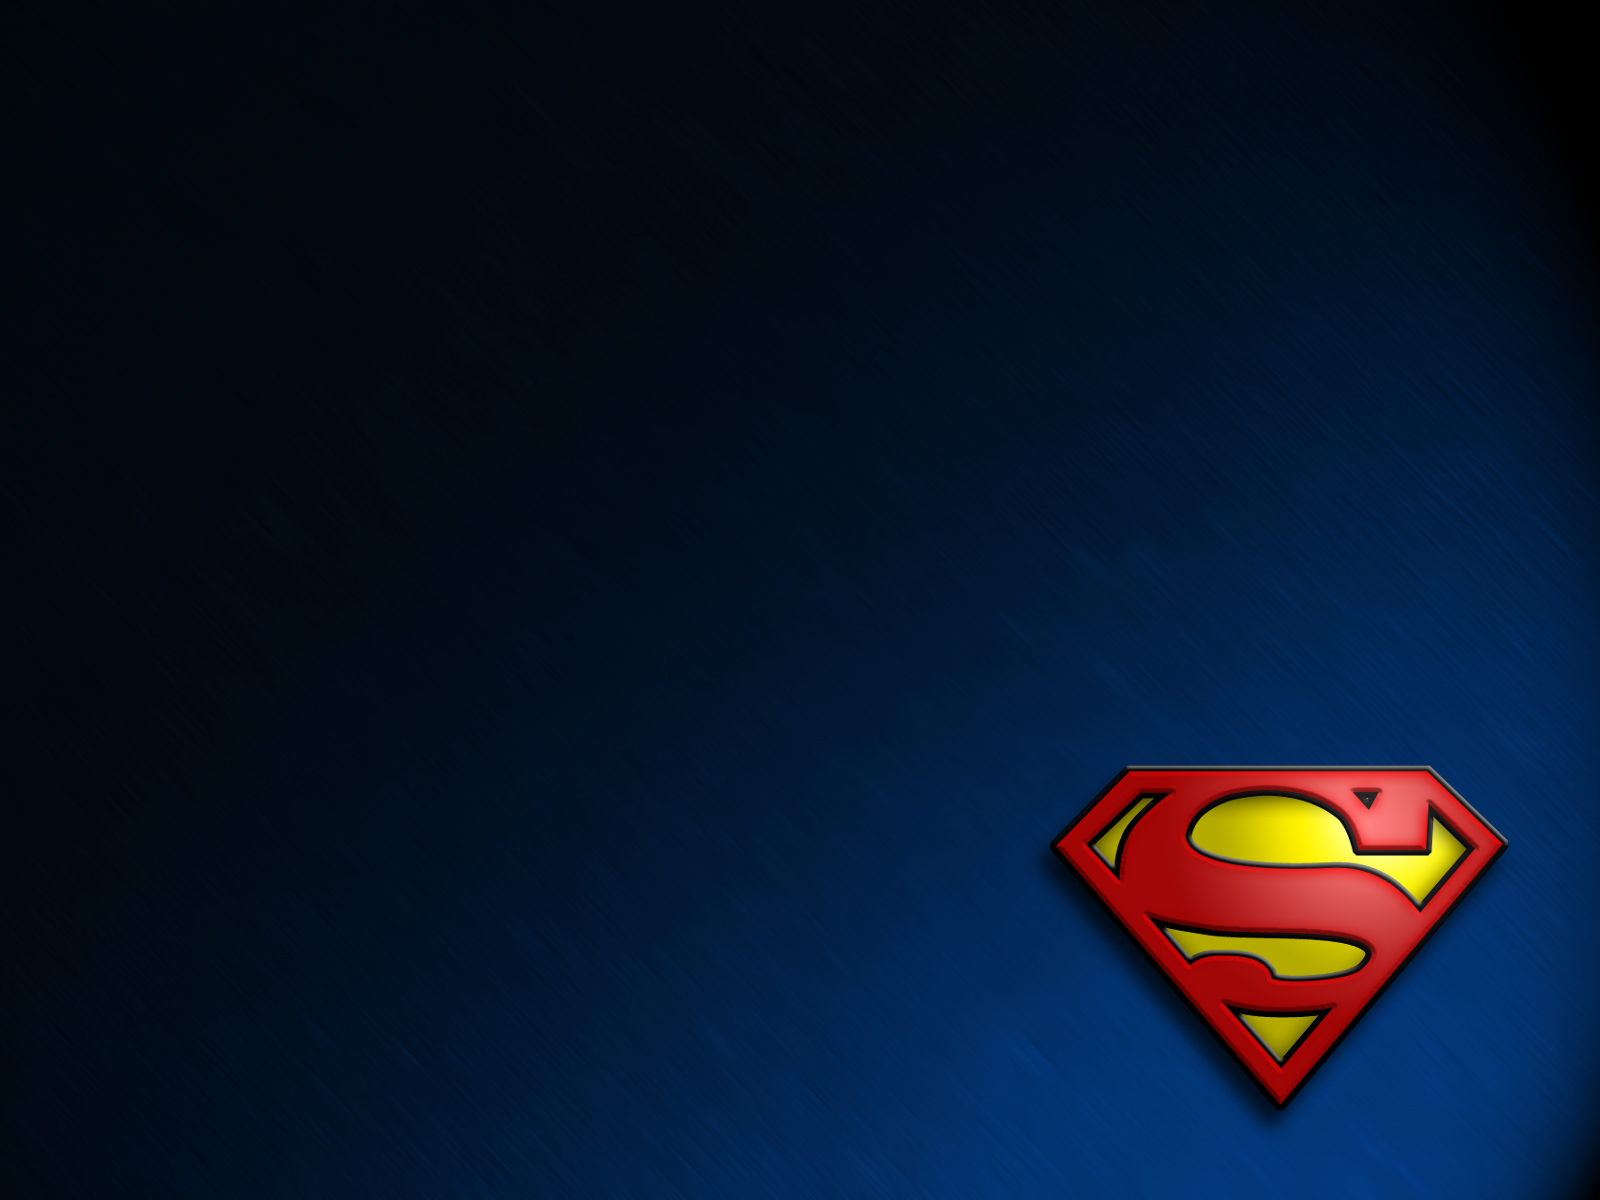  Superman Wallpapers de Superman Fondos de escritorio de Superman